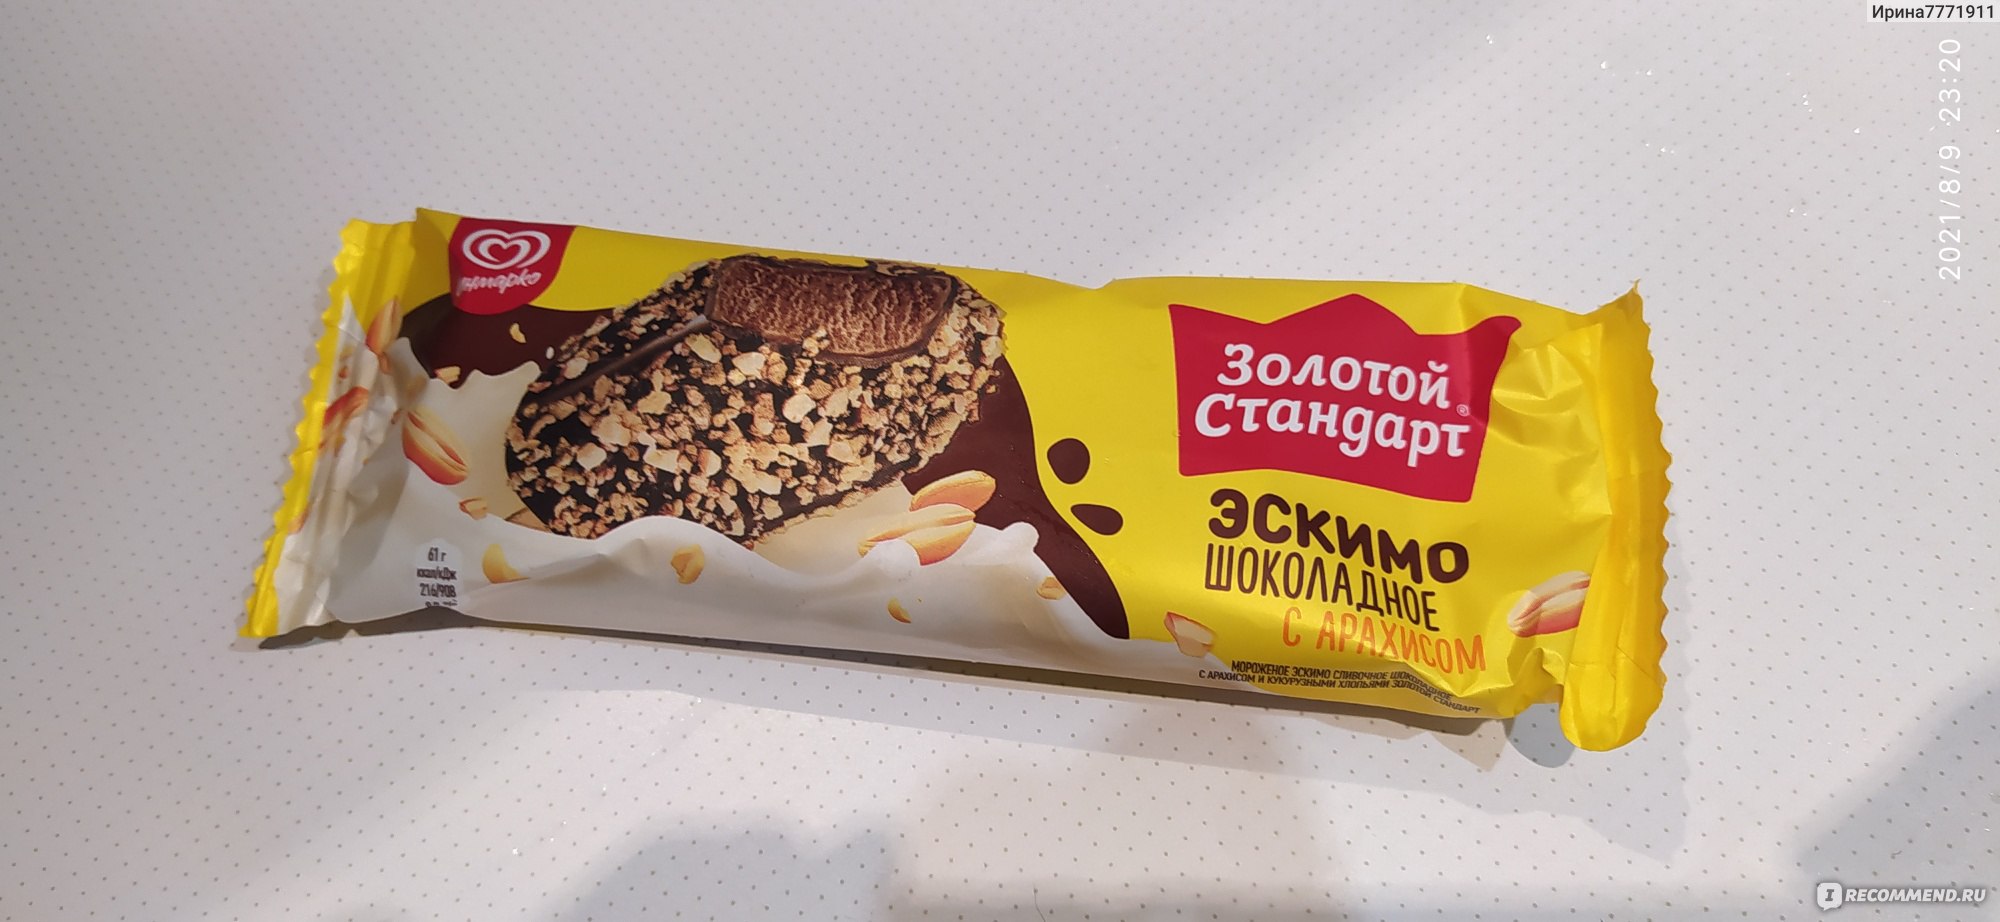 Золотой стандарт эскимо шоколадное с арахисом